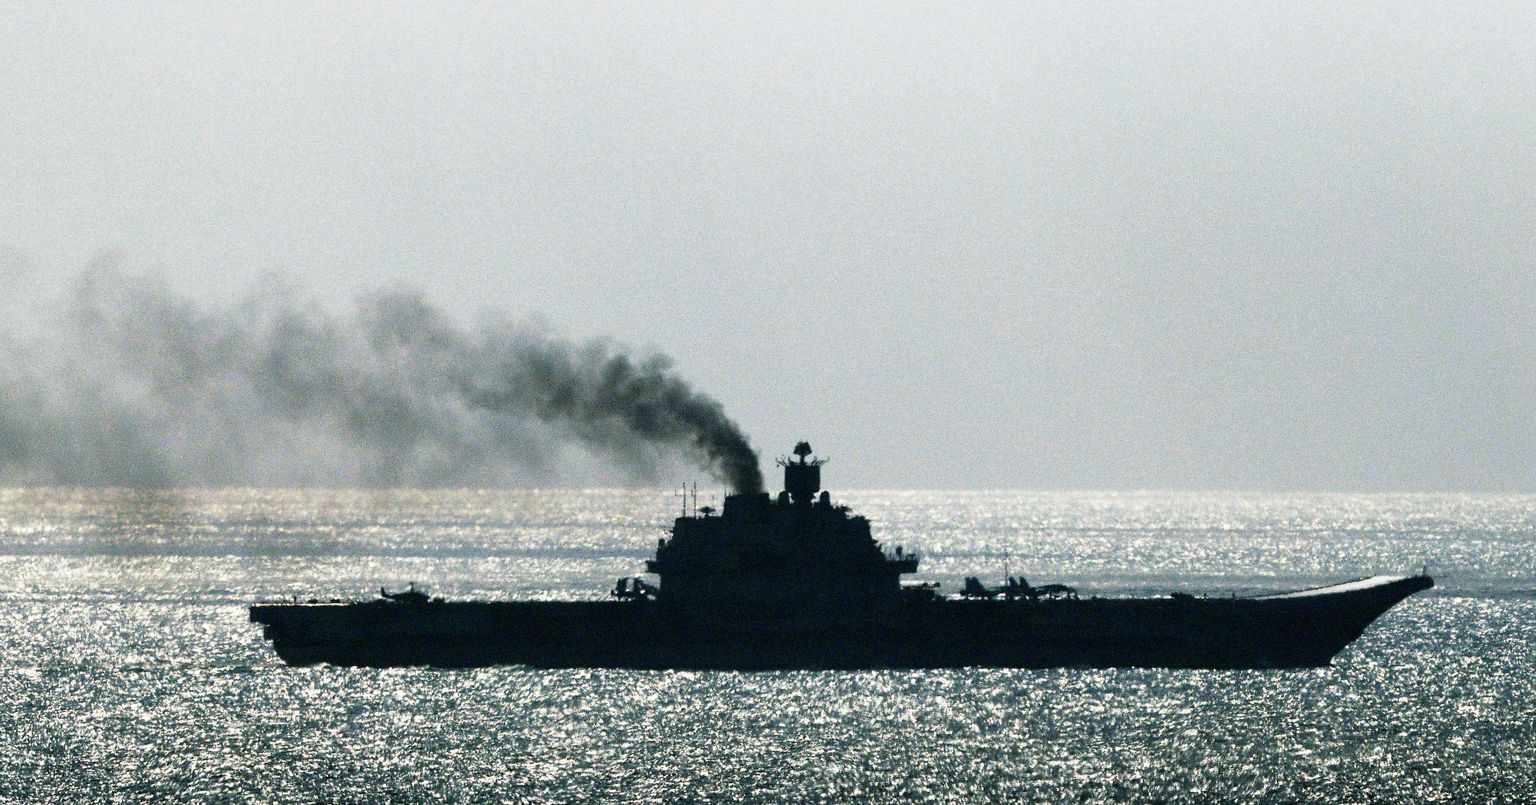 Oma kurjakuulutaval teekonnal Süüria poole on Vene lennukikandja Admiral Kuznetsov tähelepanu tõmmanud ka laeva korstnast väljuva uskumatult räige suitsujutiga.